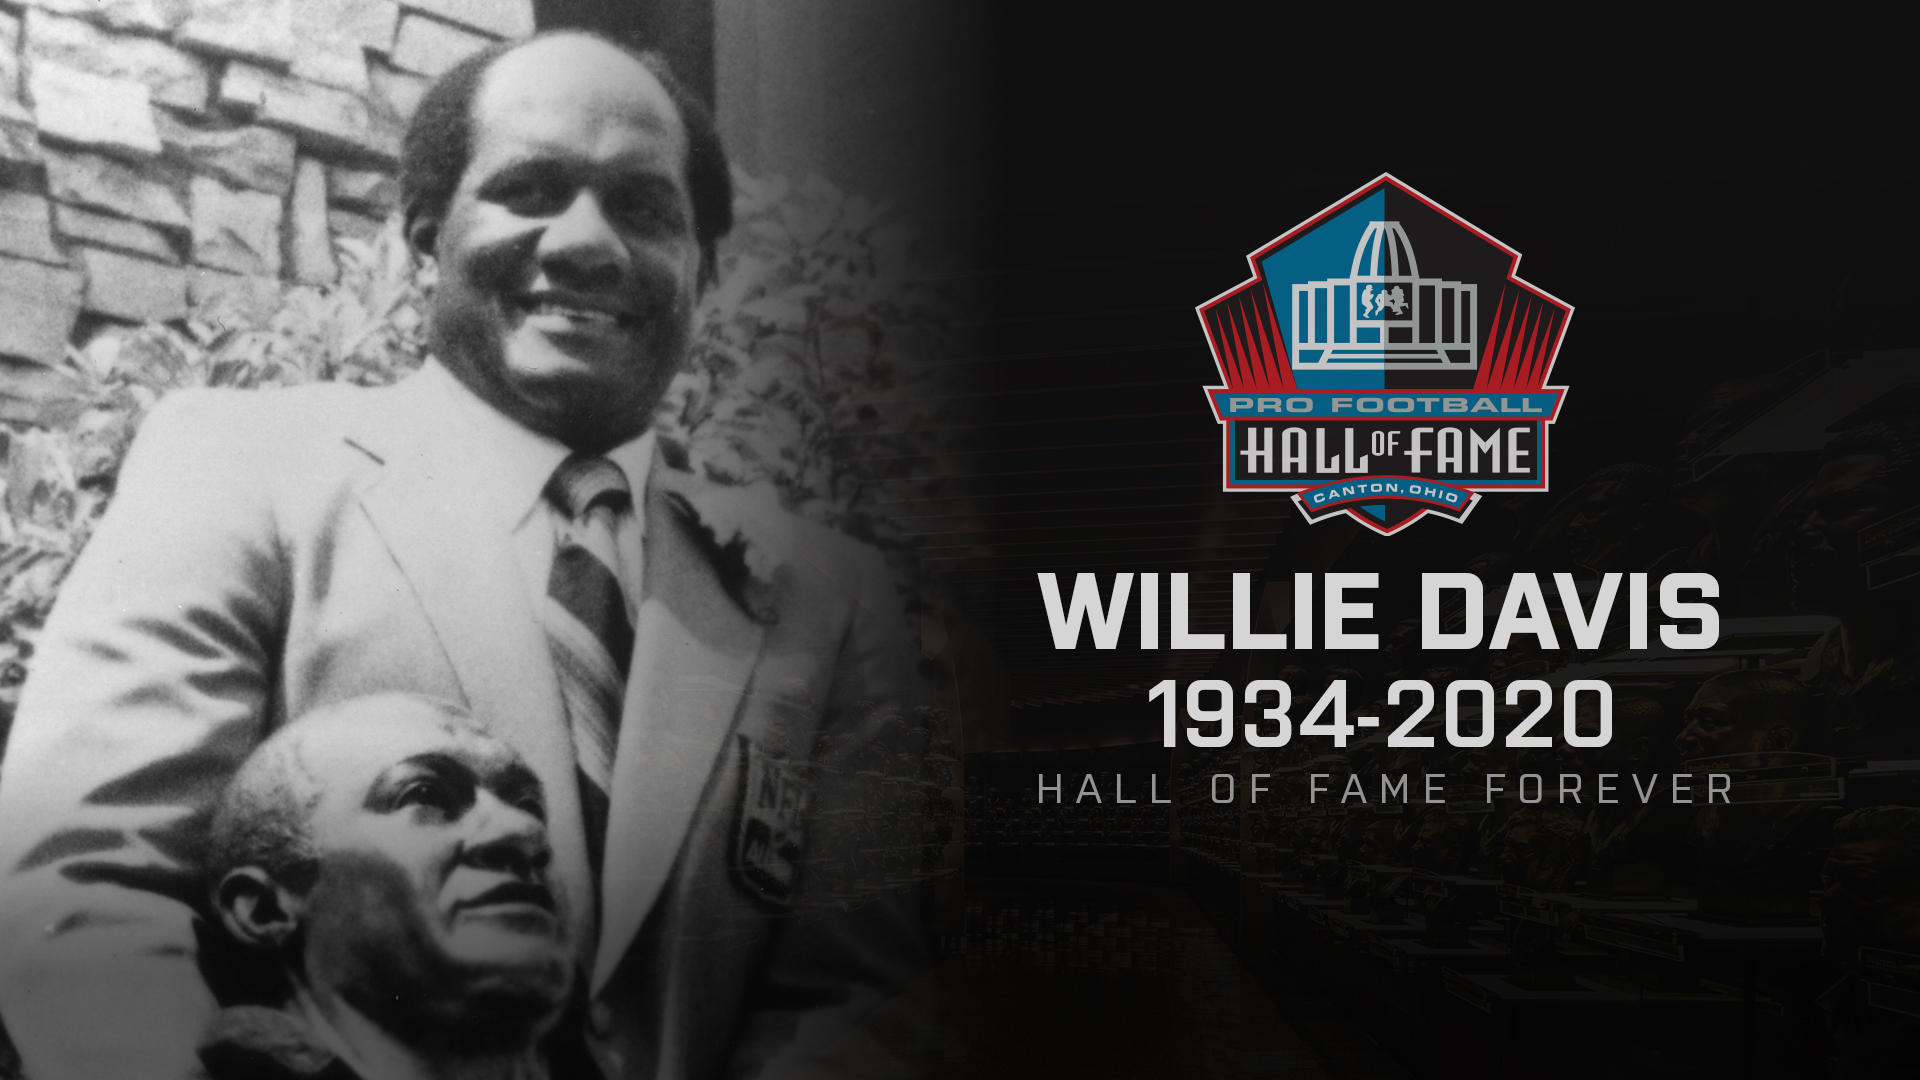 NFL Hall of Famer Willie Davis passes away_30.1